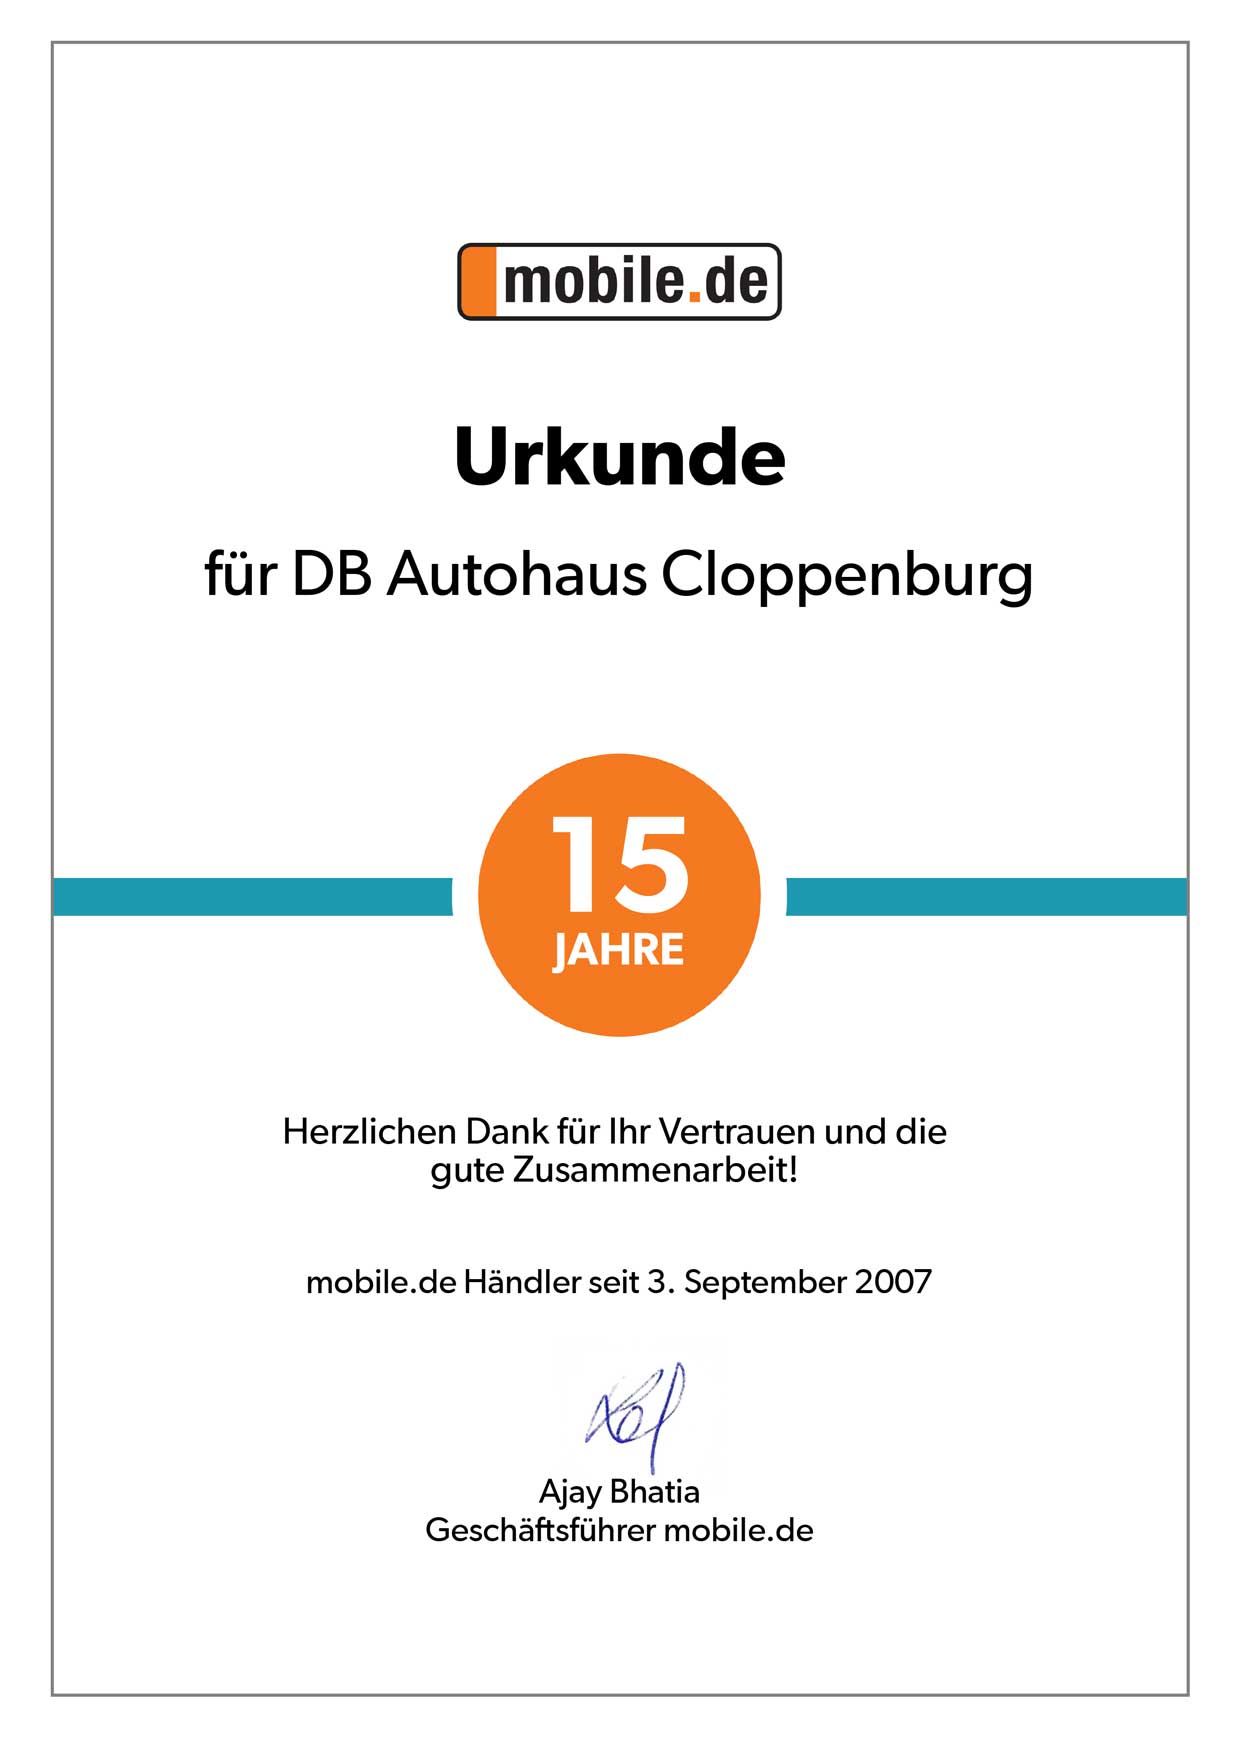 Urkunde 15 Jahre Zusammenarbeit von DB Autohaus Cloppenburg mit mobile.de